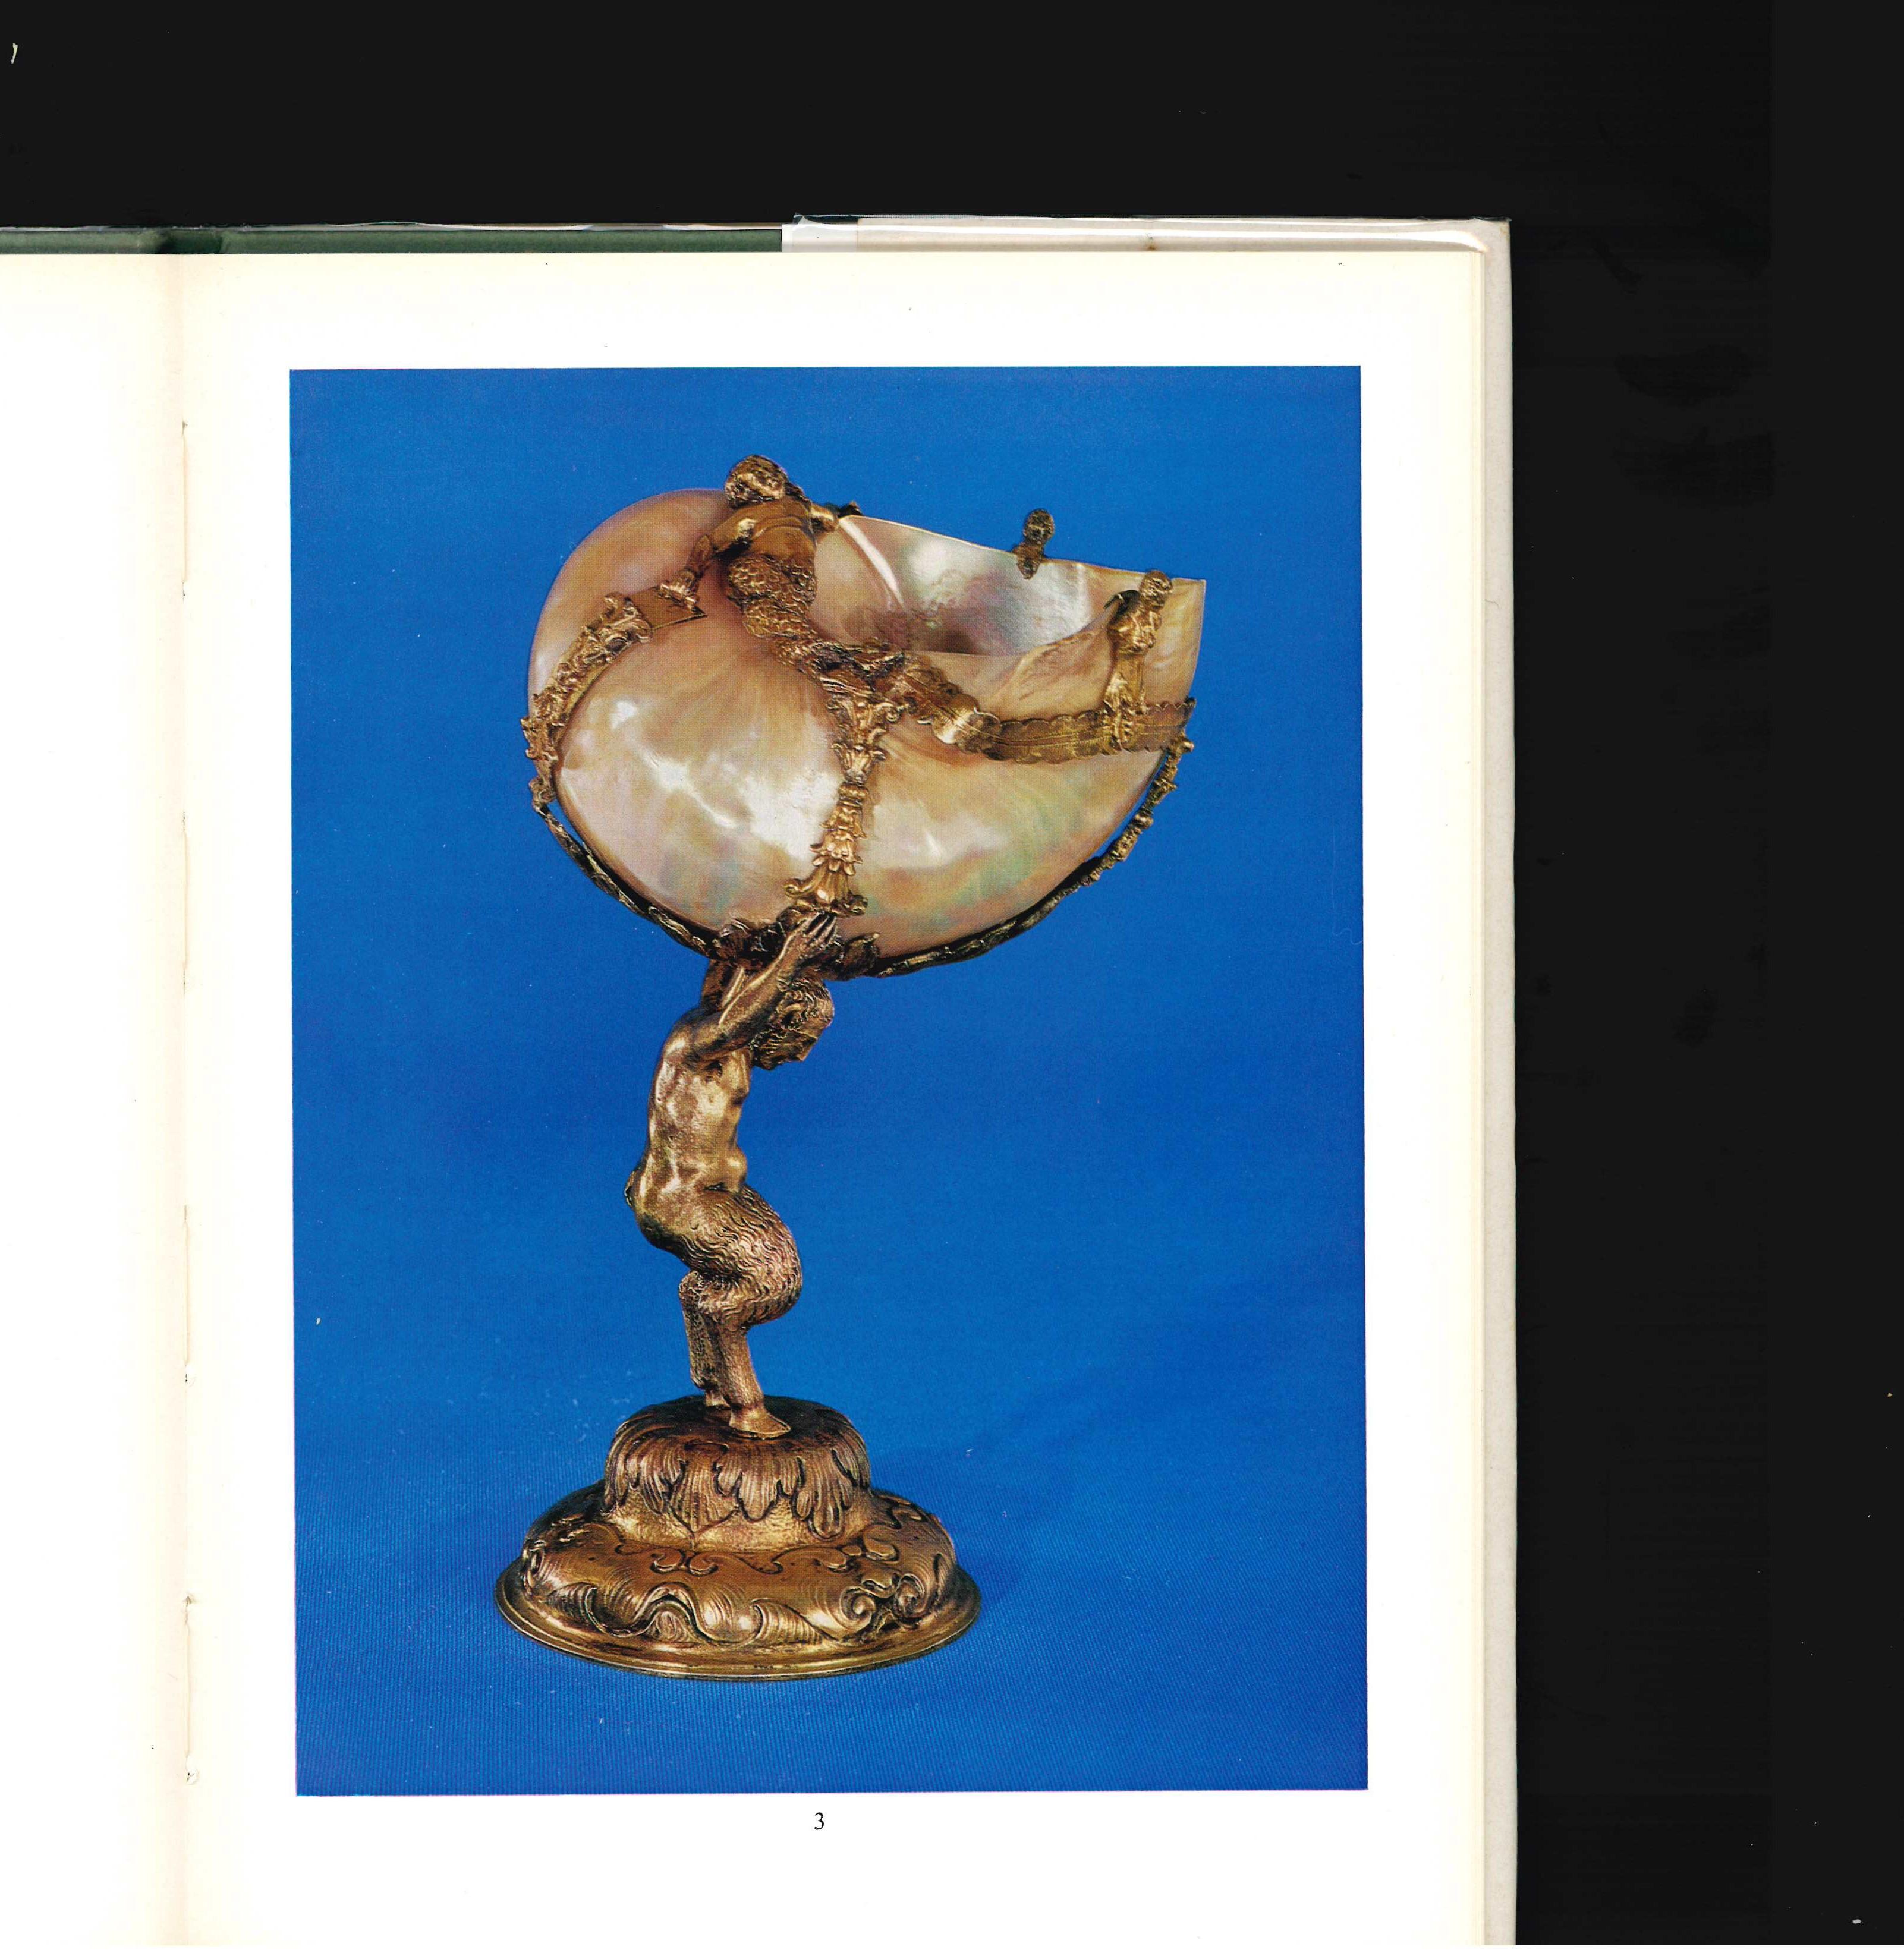 Vingt-cinq bijoux et œuvres d'art de la Renaissance provenant de la collection de feu Arturo Lopez-Willshaw. Il s'agit du catalogue de vente produit par Sotheby's en juin 1974 pour la cession de pièces provenant de la fabuleuse collection de bijoux